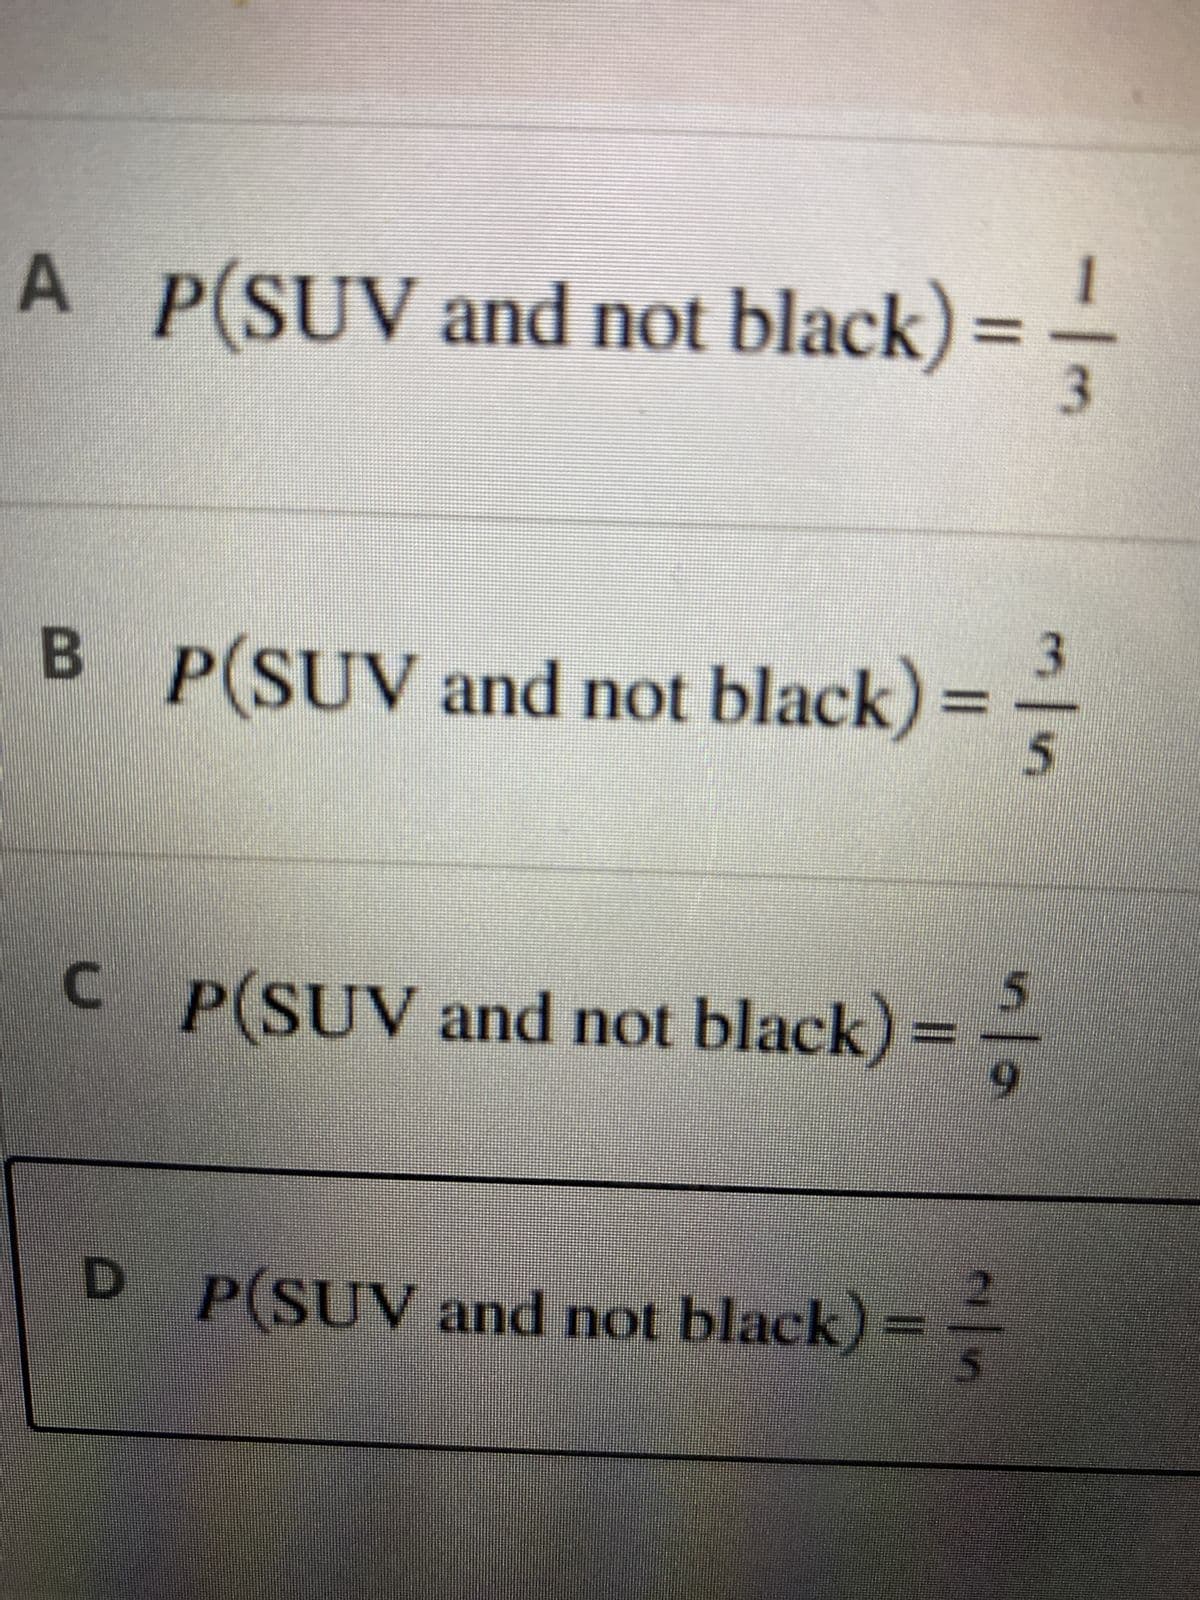 A P(SUV and not black) =
3
3
B_P(SUV and not black) ==-
5
CP(SUV and not black)==--
9
2
D P(SUV and not black) ==